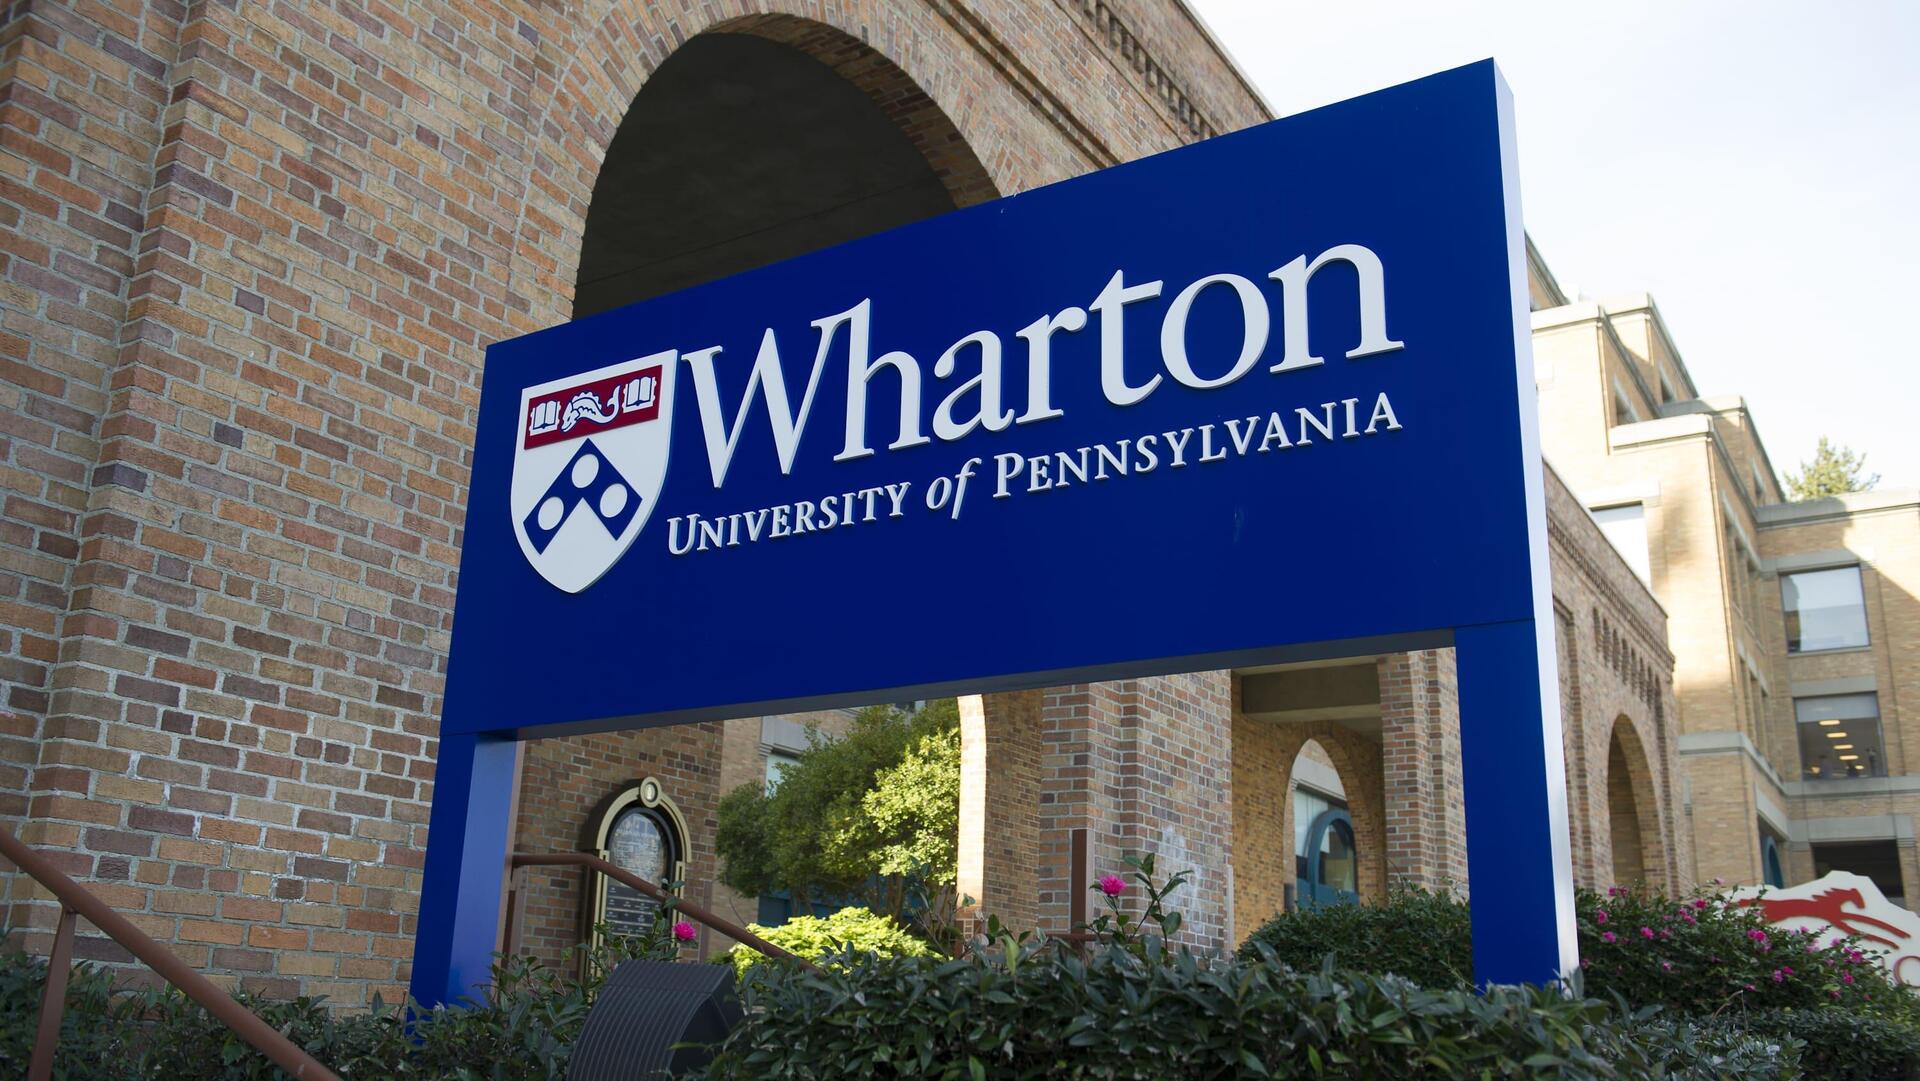 וורטון בי"ס למינהל עסקים אוניברסיטת פנסילבניה